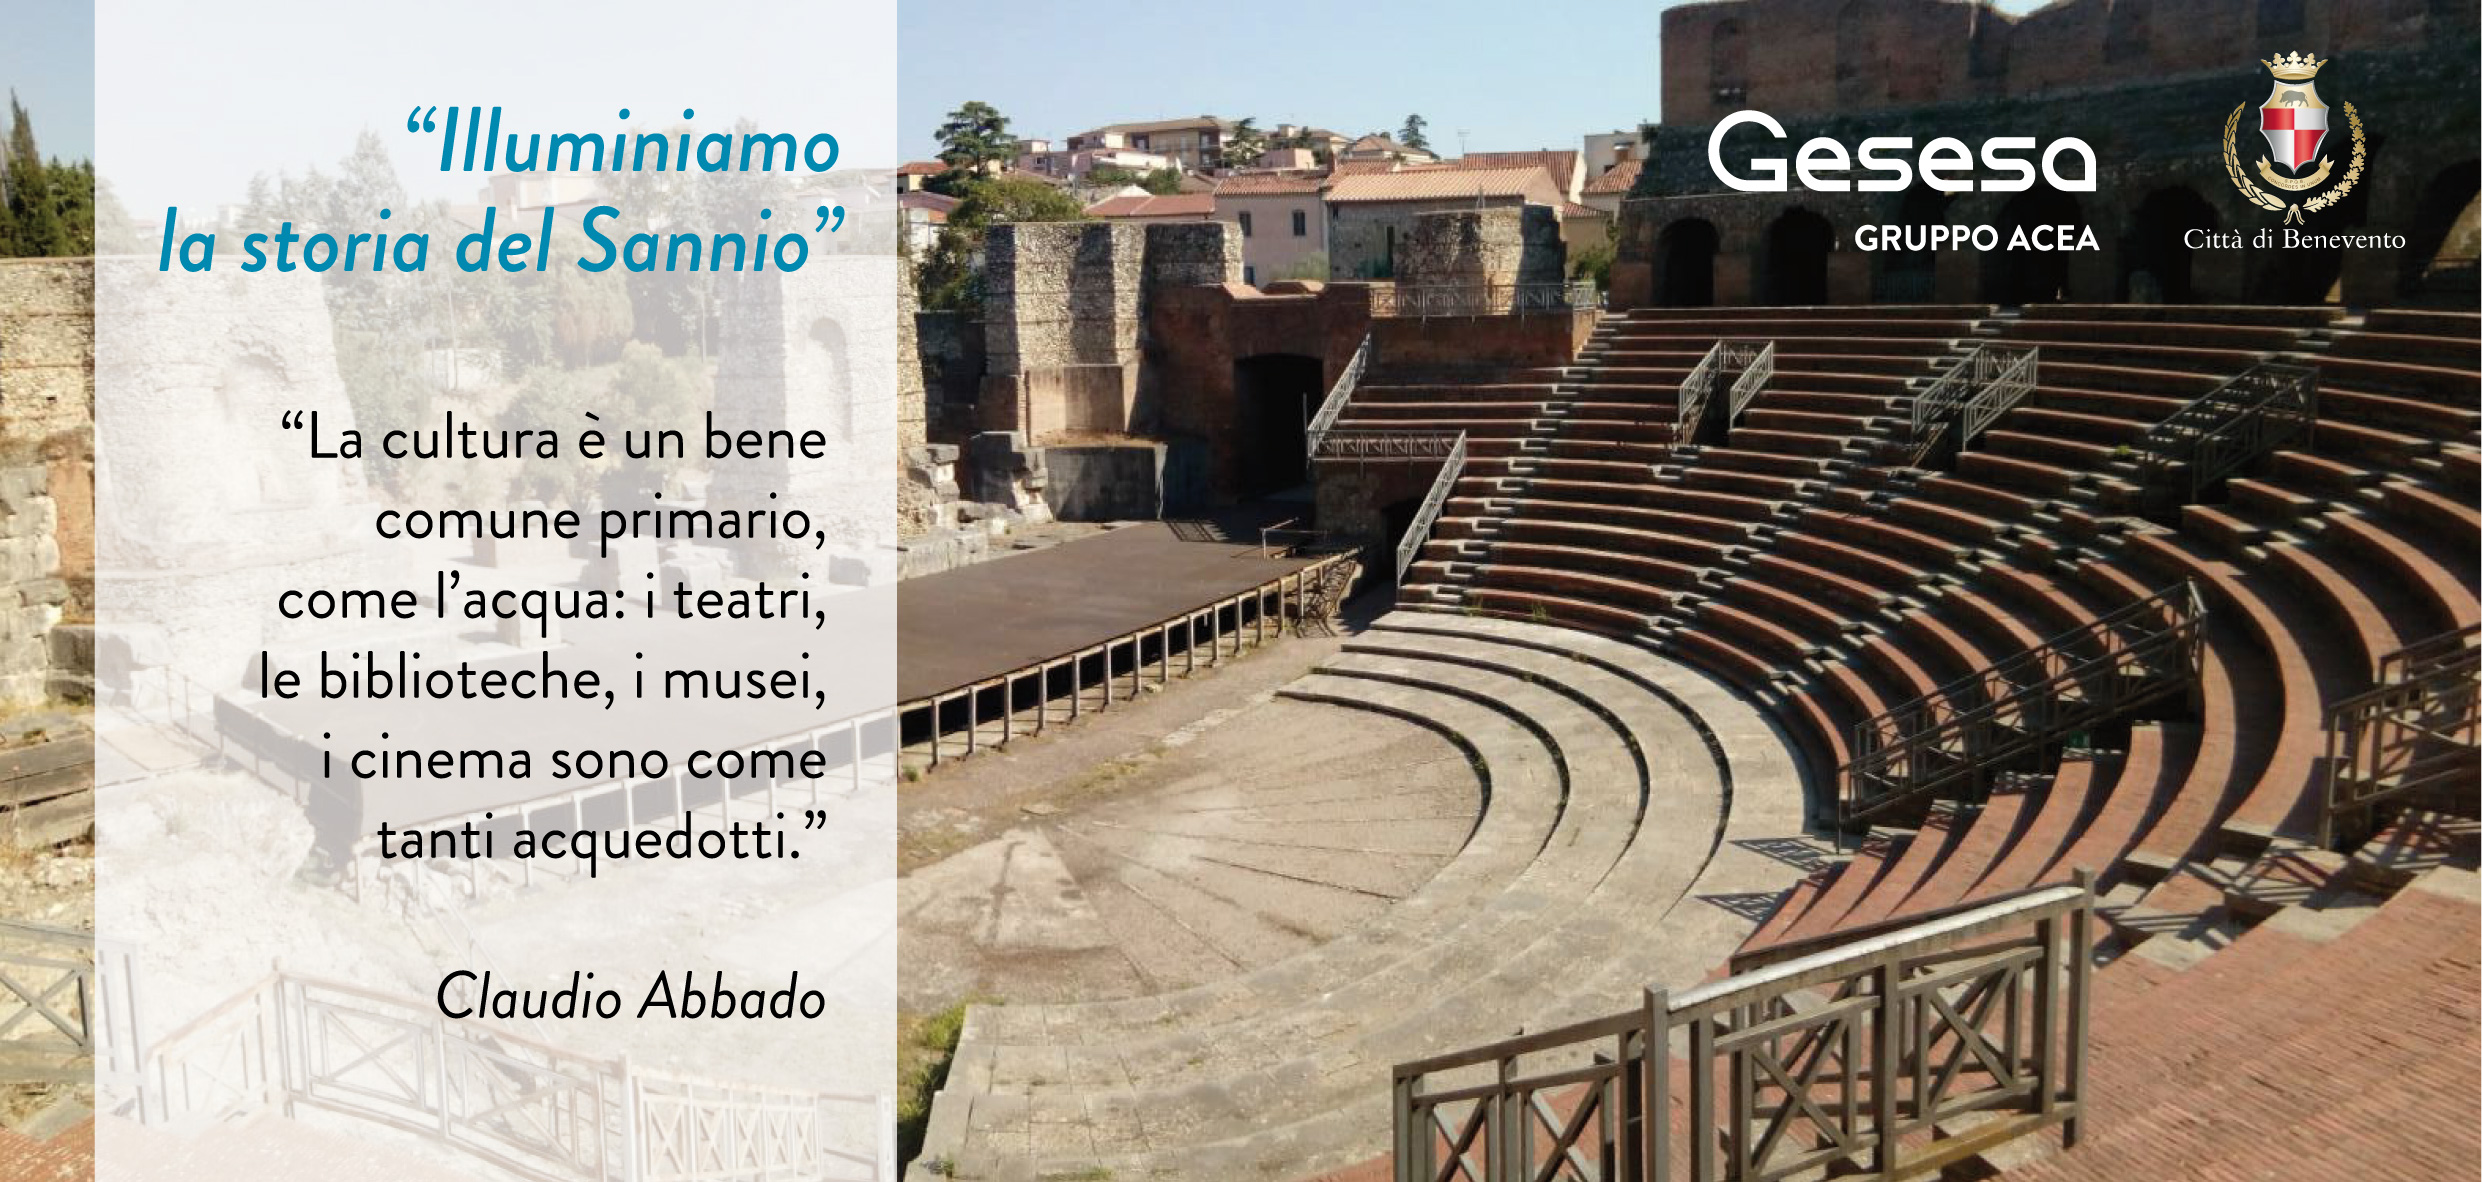 Benevento| S’illumina il Teatro Romano, Gesesa presenta progetto